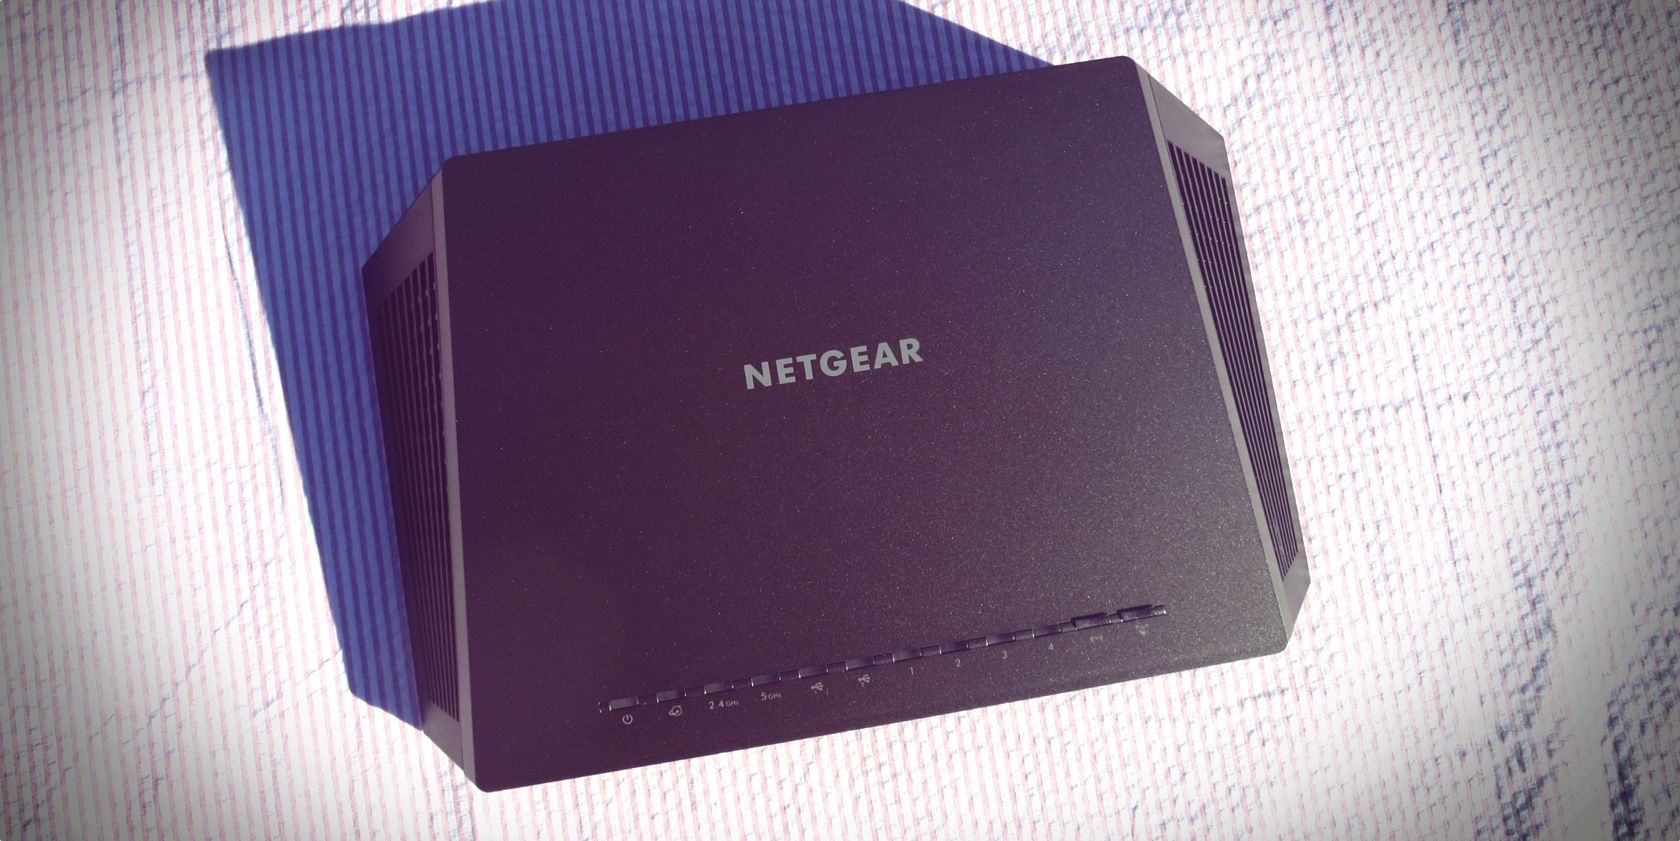 netgear a6200 firmware